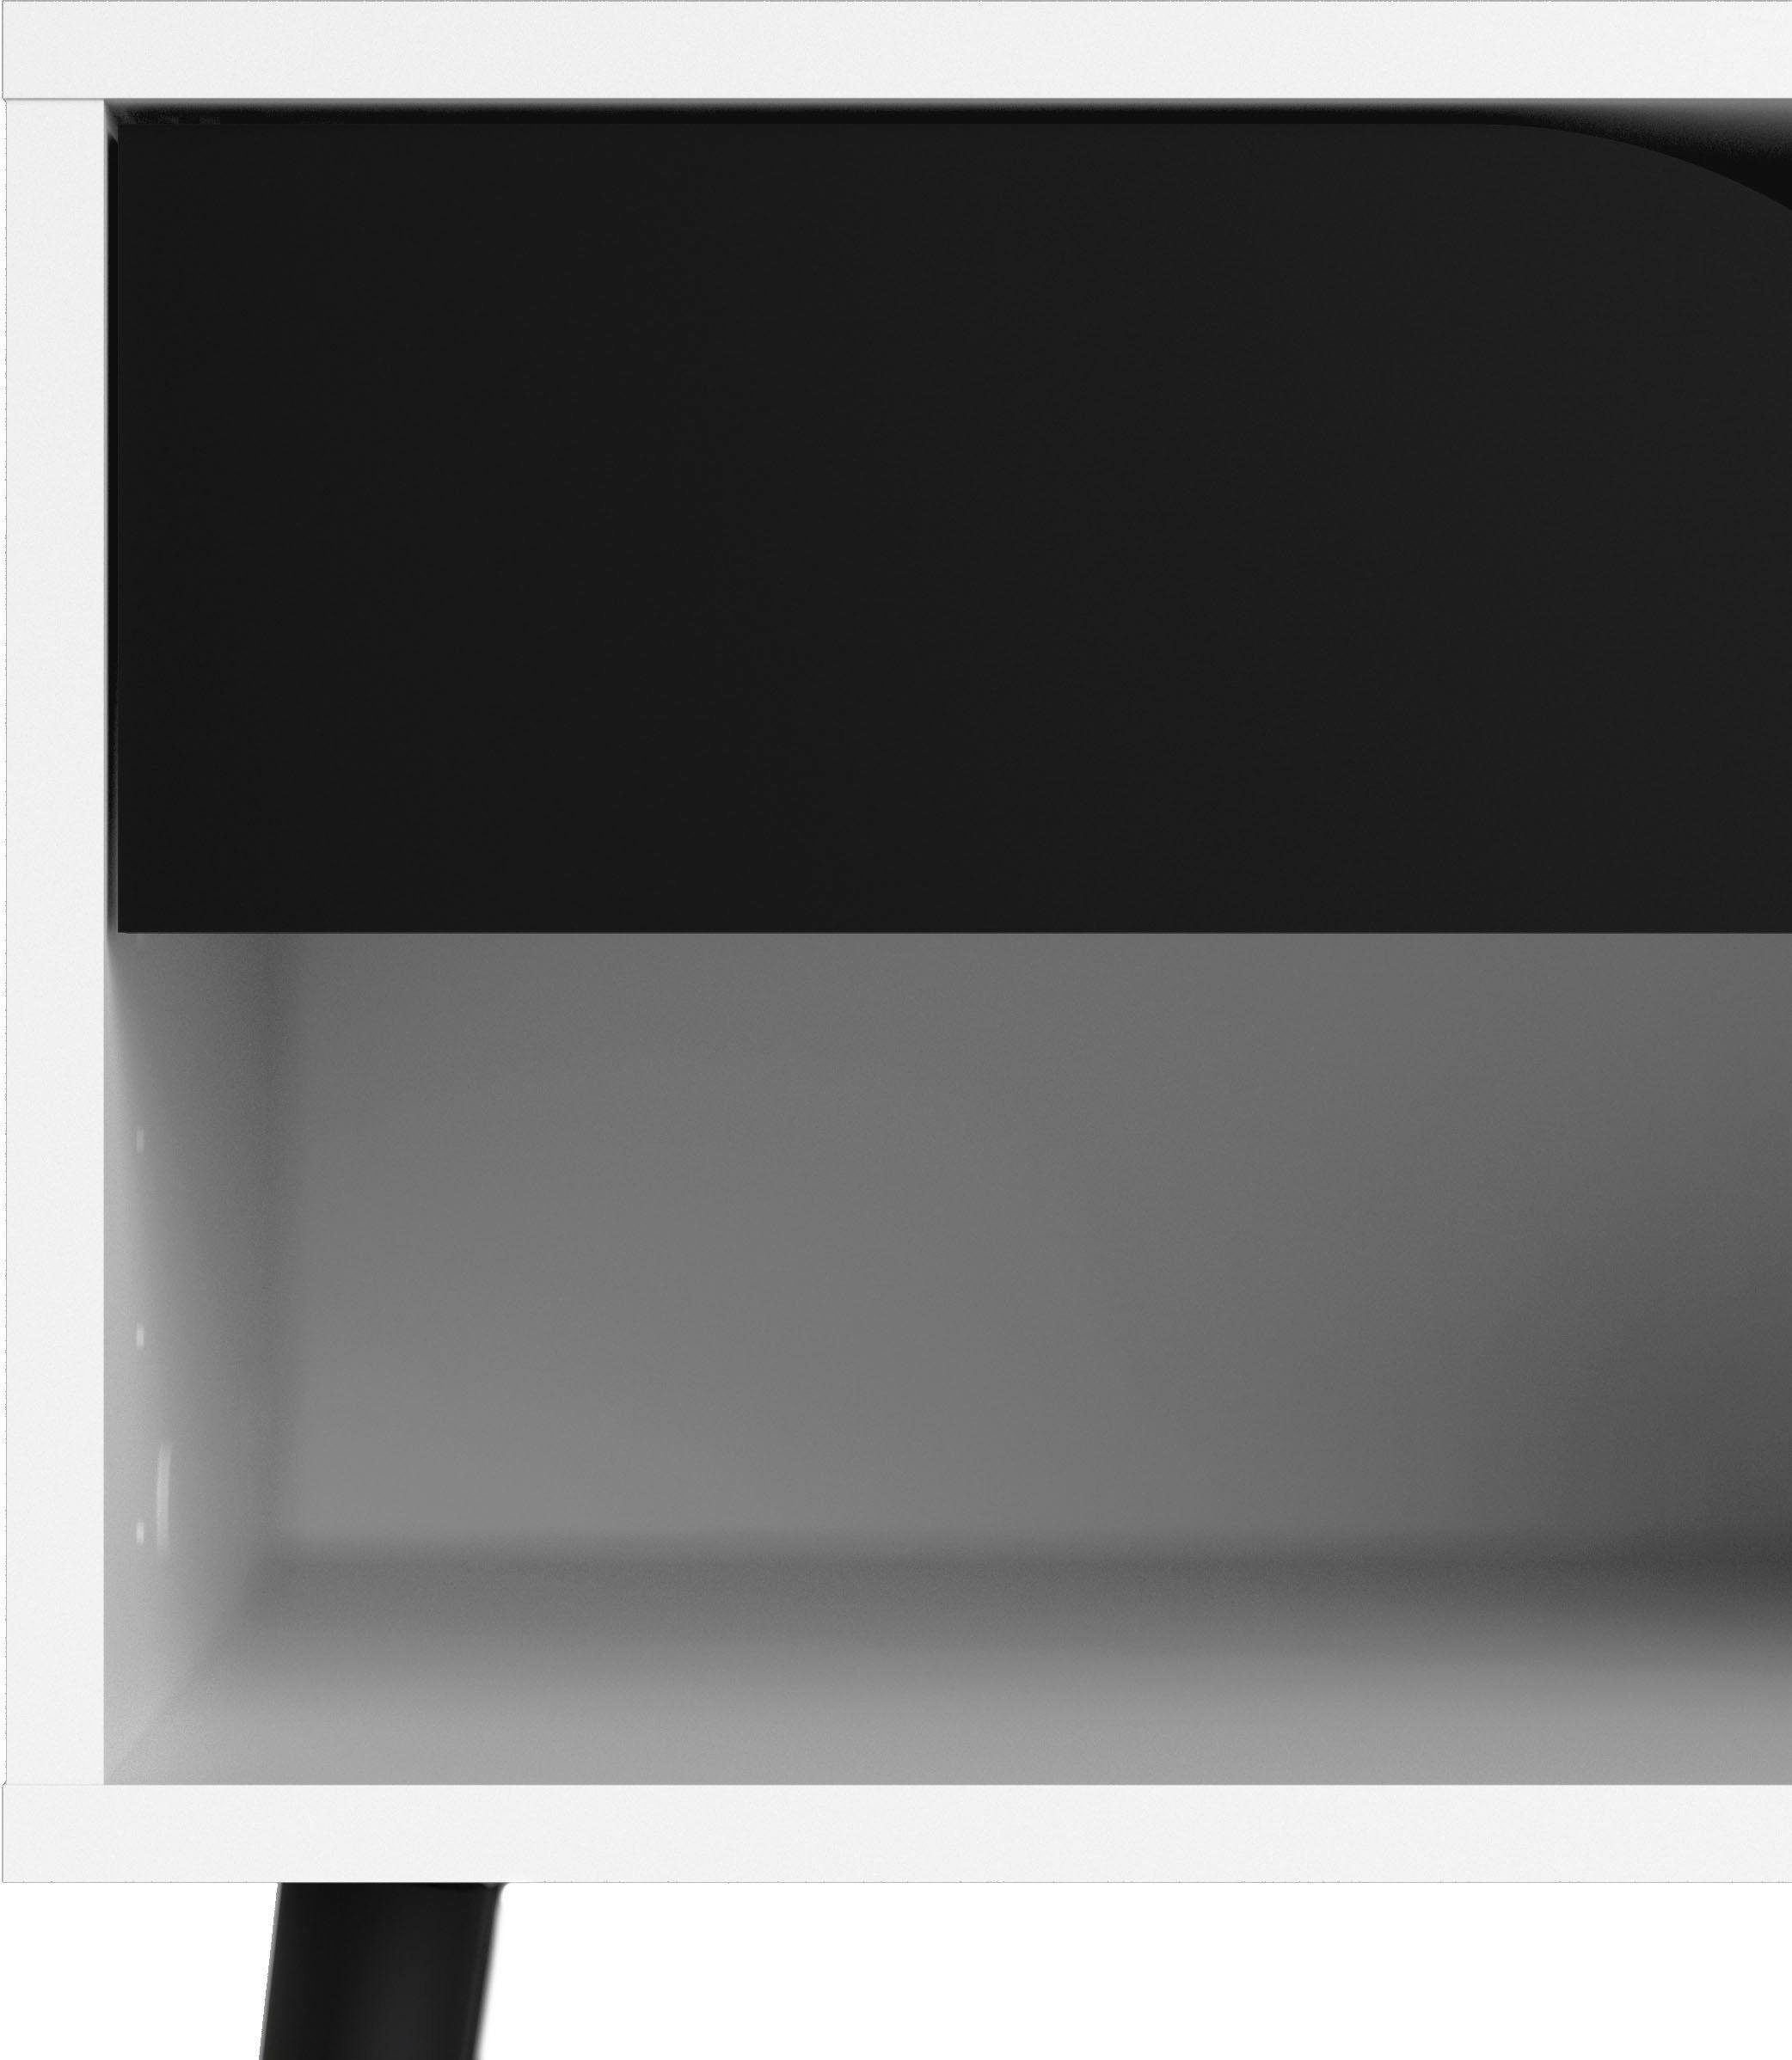 | Scandi Design Nachttisch schönem weiß massivem mit weiß im Home Oslo, | weiß/schwarz matt Beingestell, affaire